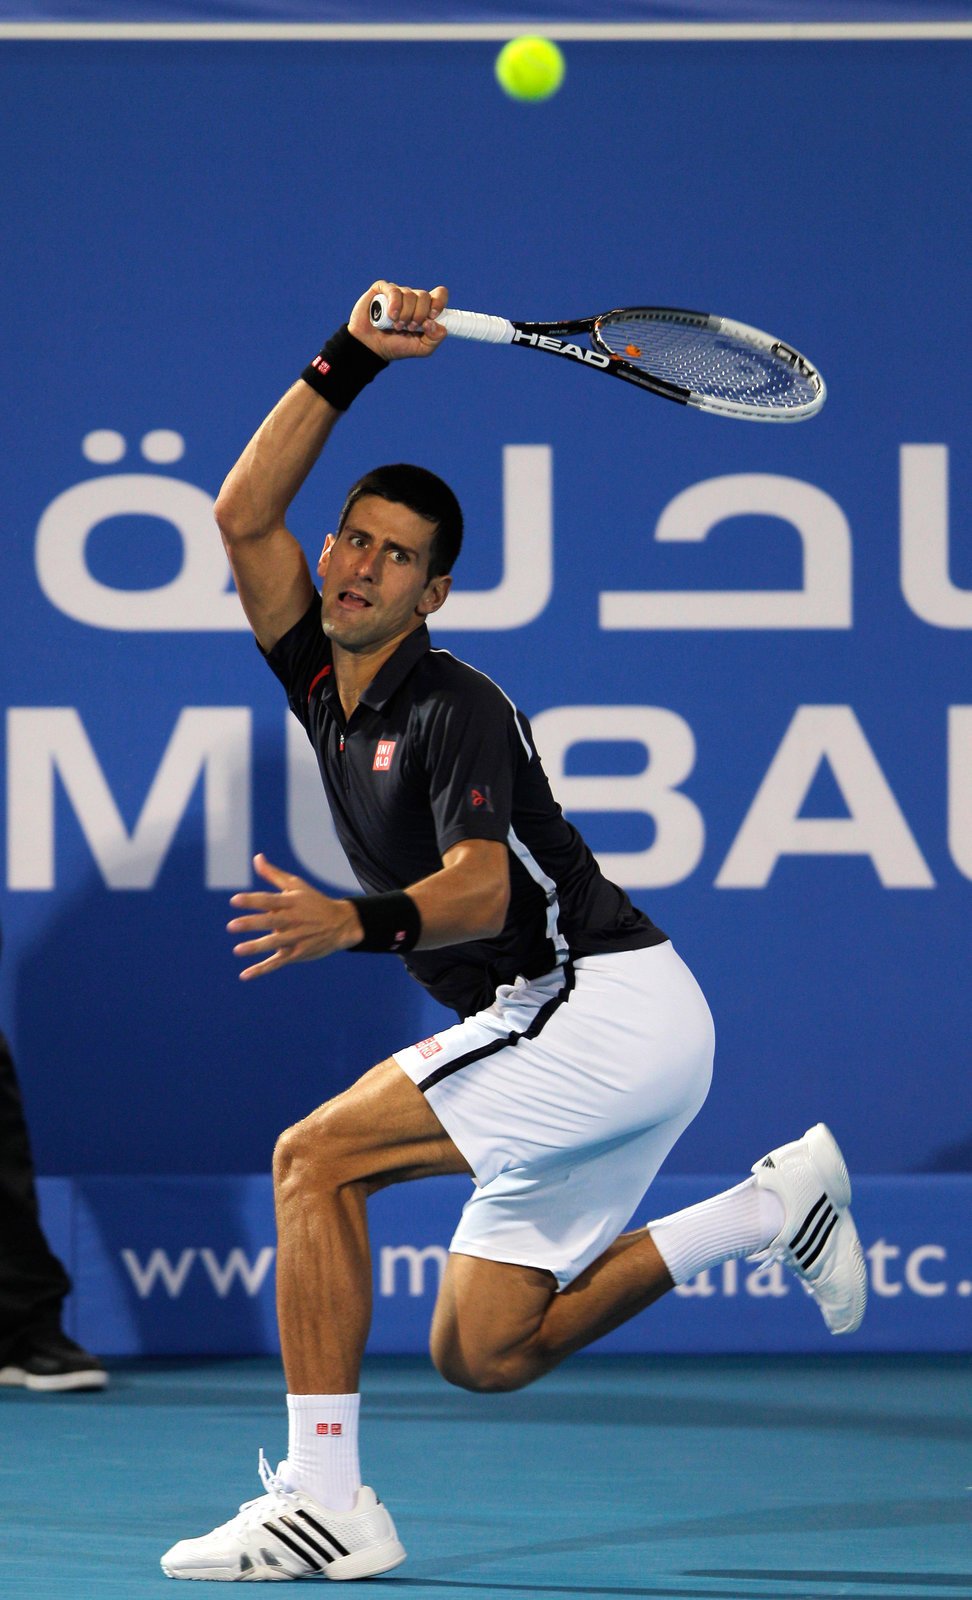 Srbský tenista Novak Djokovič vyhrál exhibiční turnaj v Abú Zabí, ve finále zdolal Španěla Almagra po boji 2:1 na sety